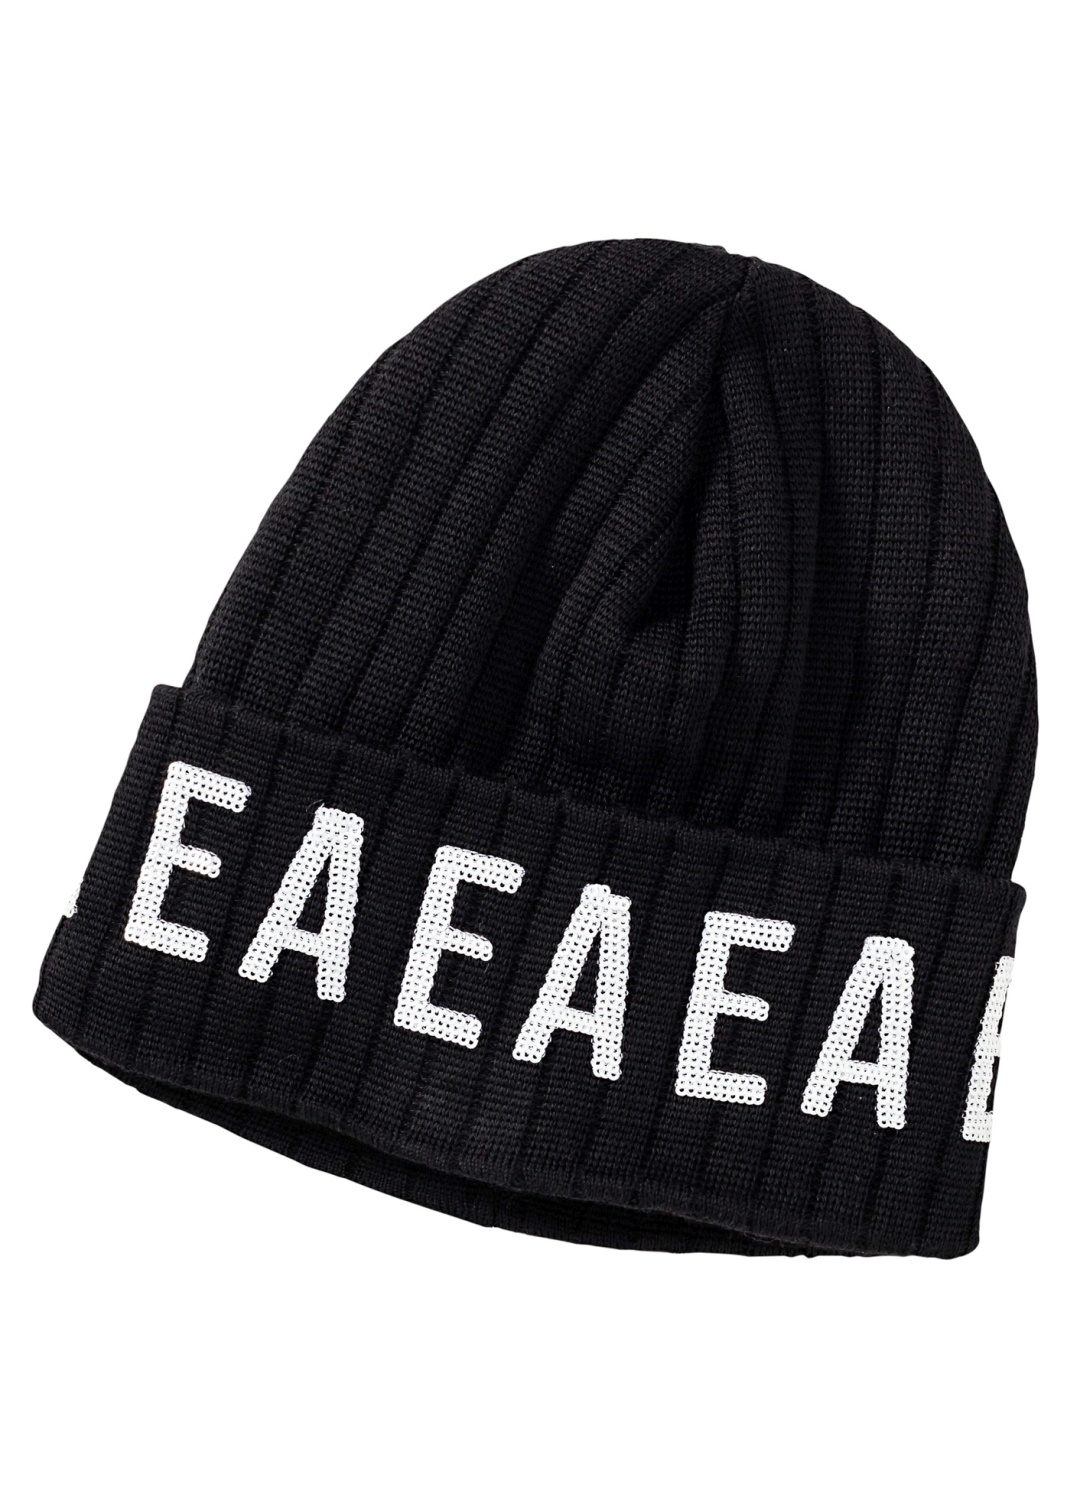 EA Pailette Hat image number 0